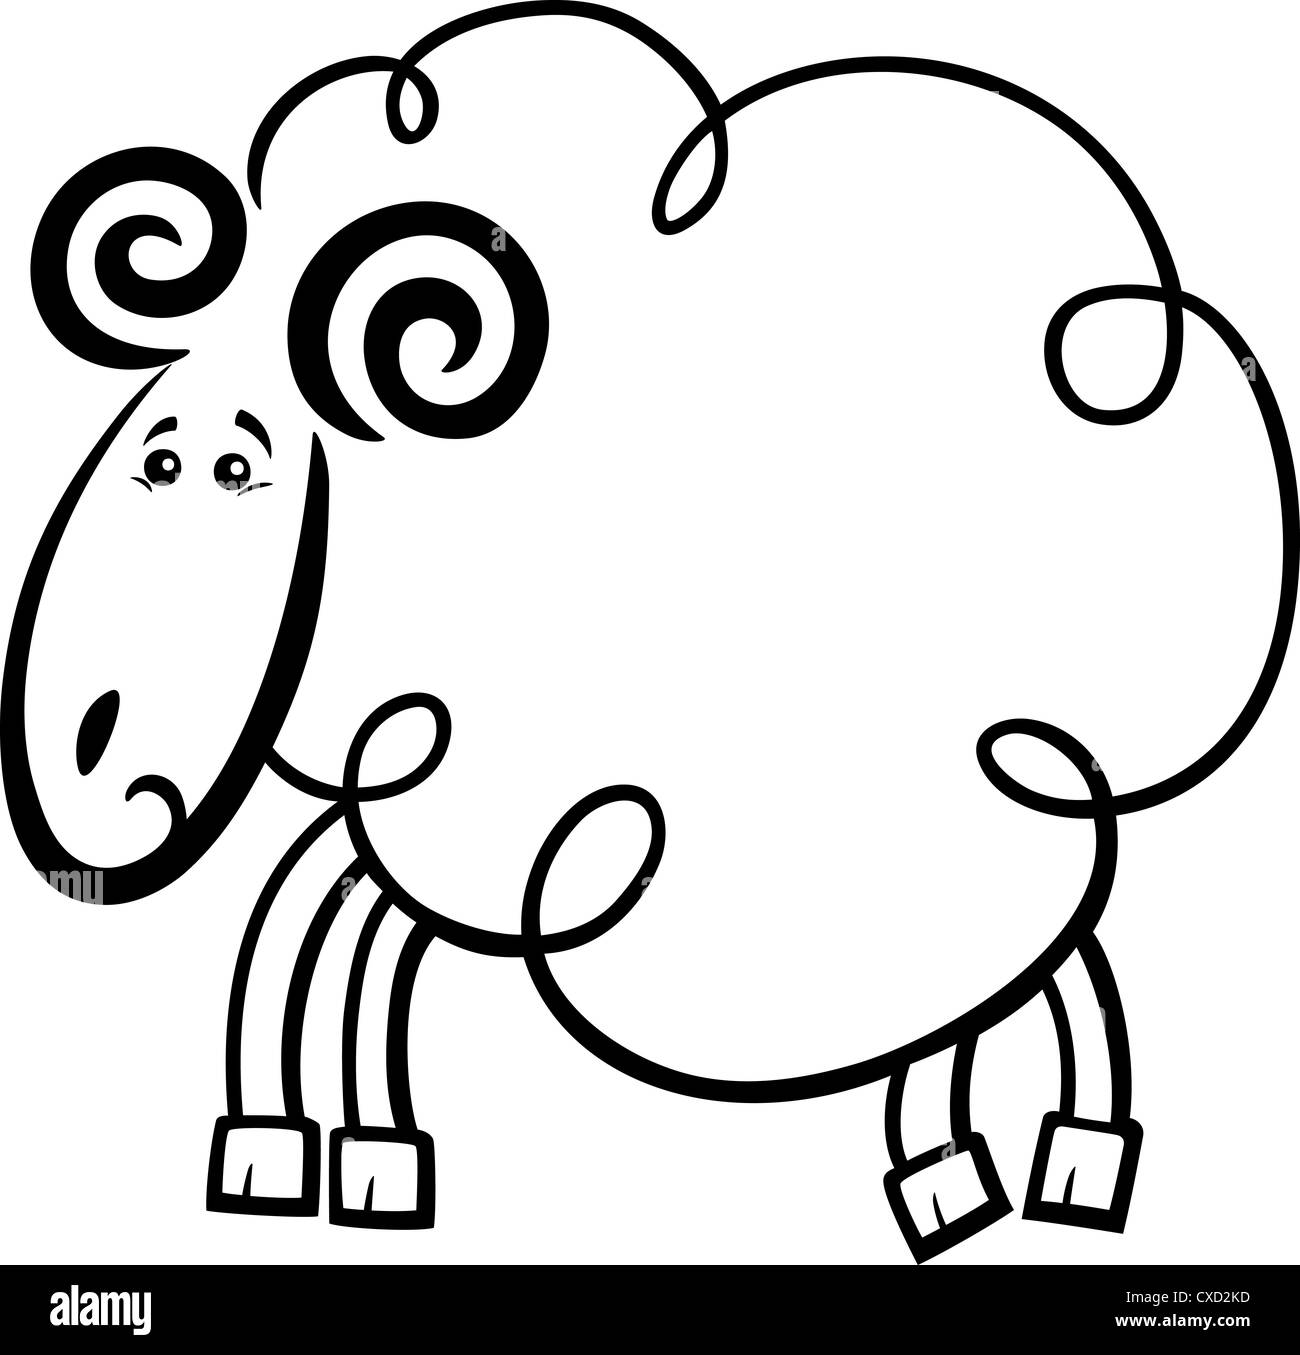 Ilustración De Lindo Ram O Personaje De Dibujos Animados De Animales